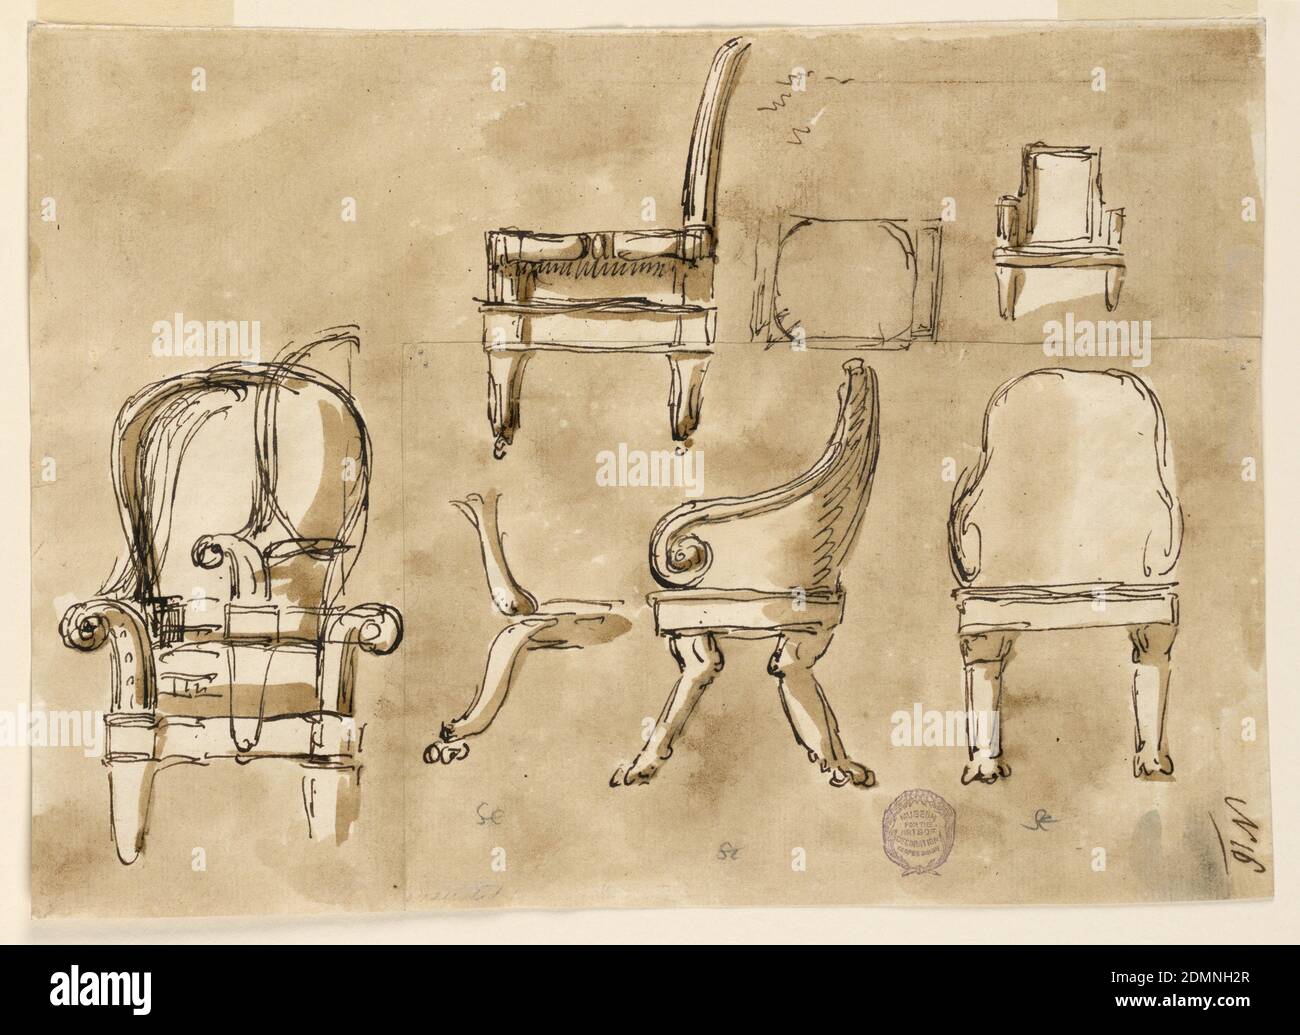 Chaises, stylo et encre brune, brosse et lavage brun, graphite, sur papier,  Haut centre : profil latéral d'une chaise latérale sur roues. À droite se  trouve un profil avant d'un fauteuil avec